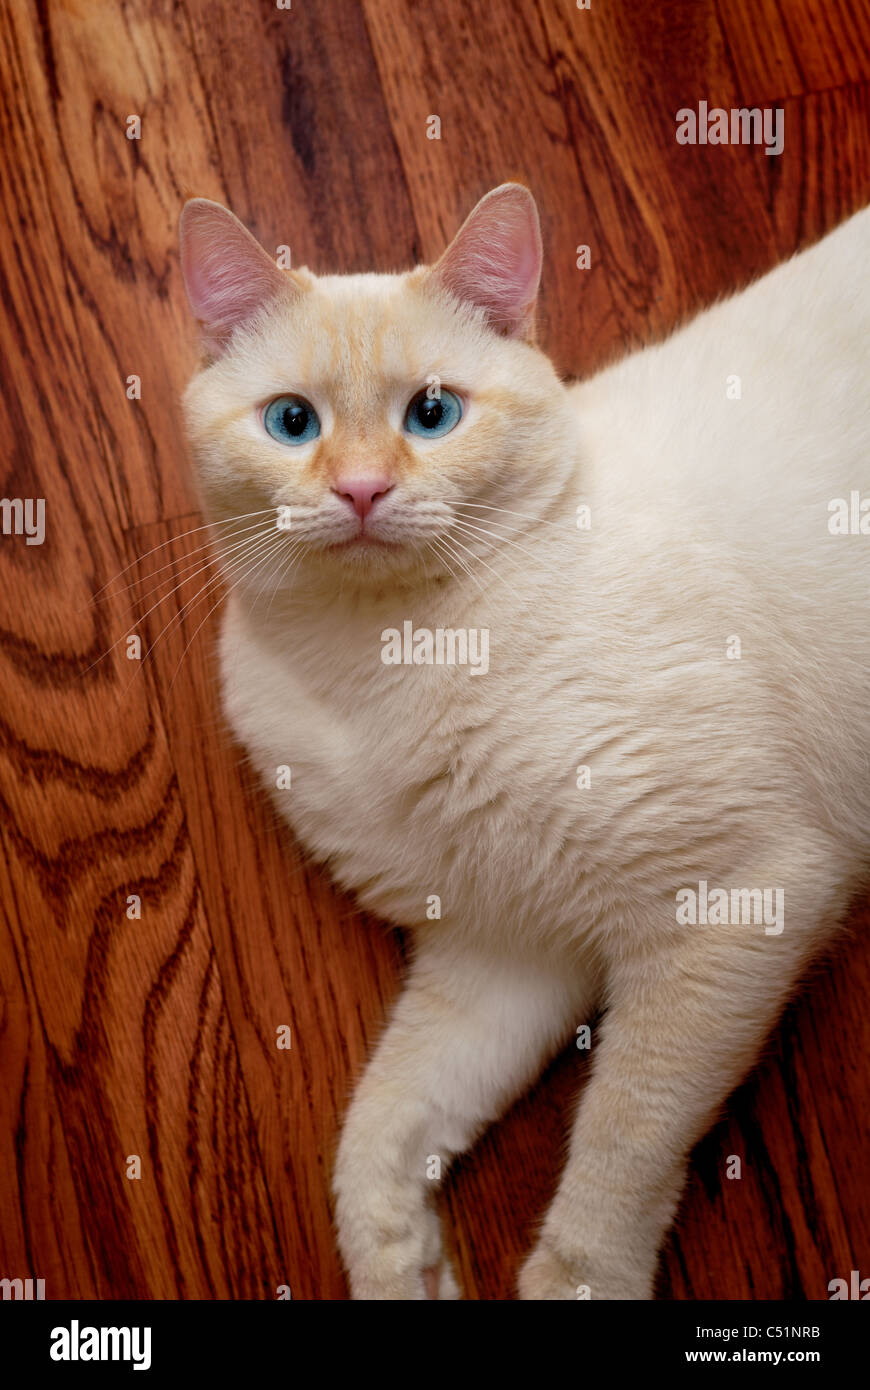 Un ritratto di un punto di fiamma gatto siamese gatto, altrimenti noto come un oriental shorthair. Questo gatto ha gli occhi blu. Foto Stock